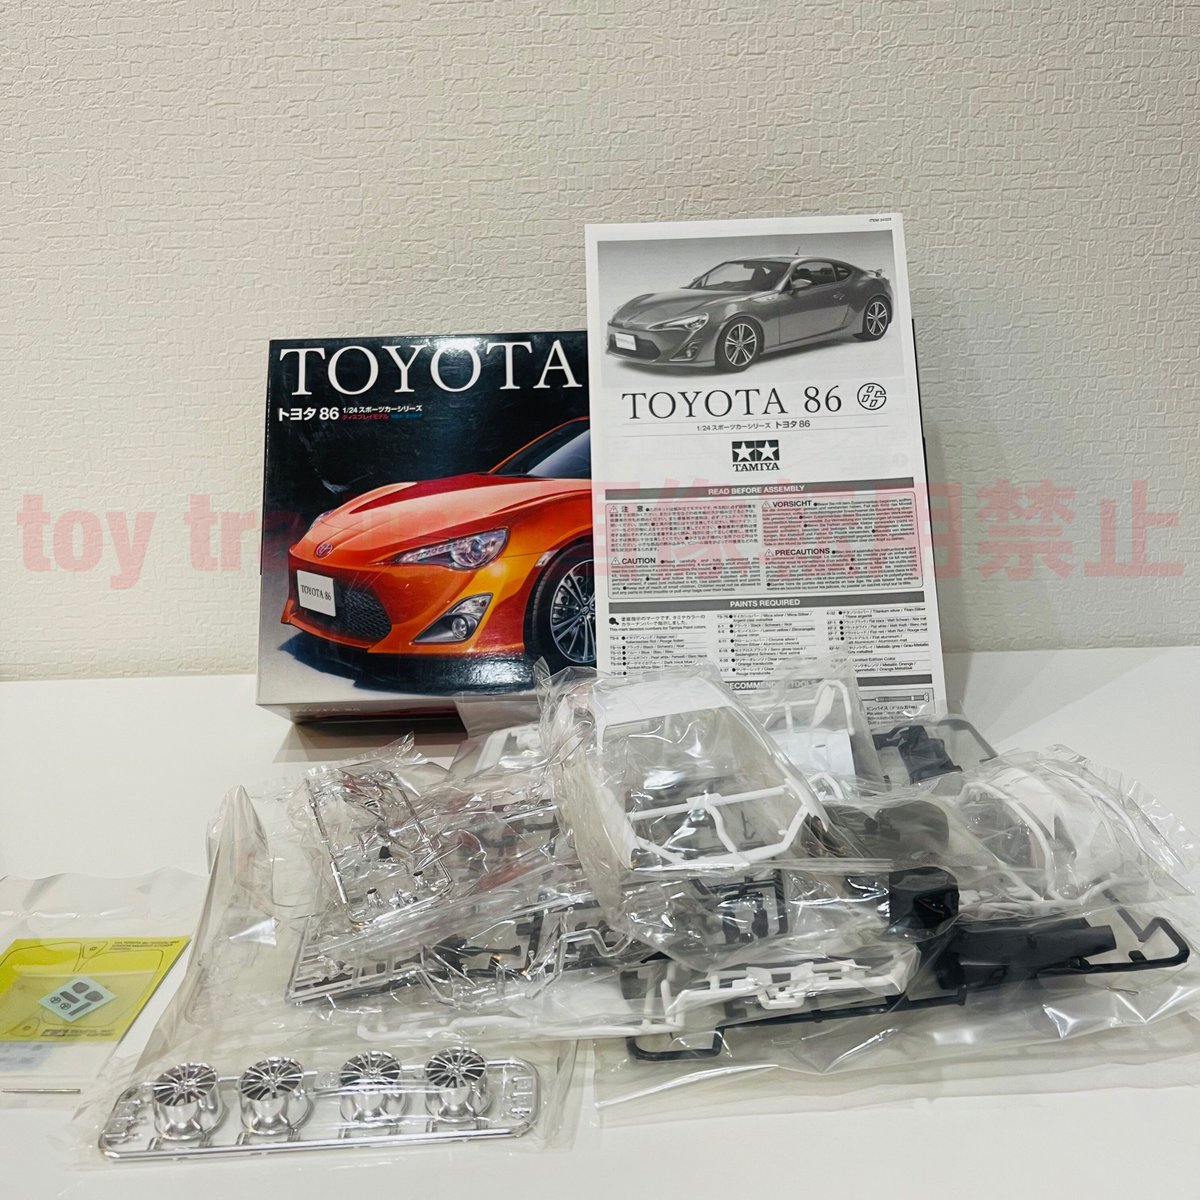 タミヤ模型 トヨタ 86 1/24 TOYOTA 86 スポーツカーシリーズ No.323 プラモデル